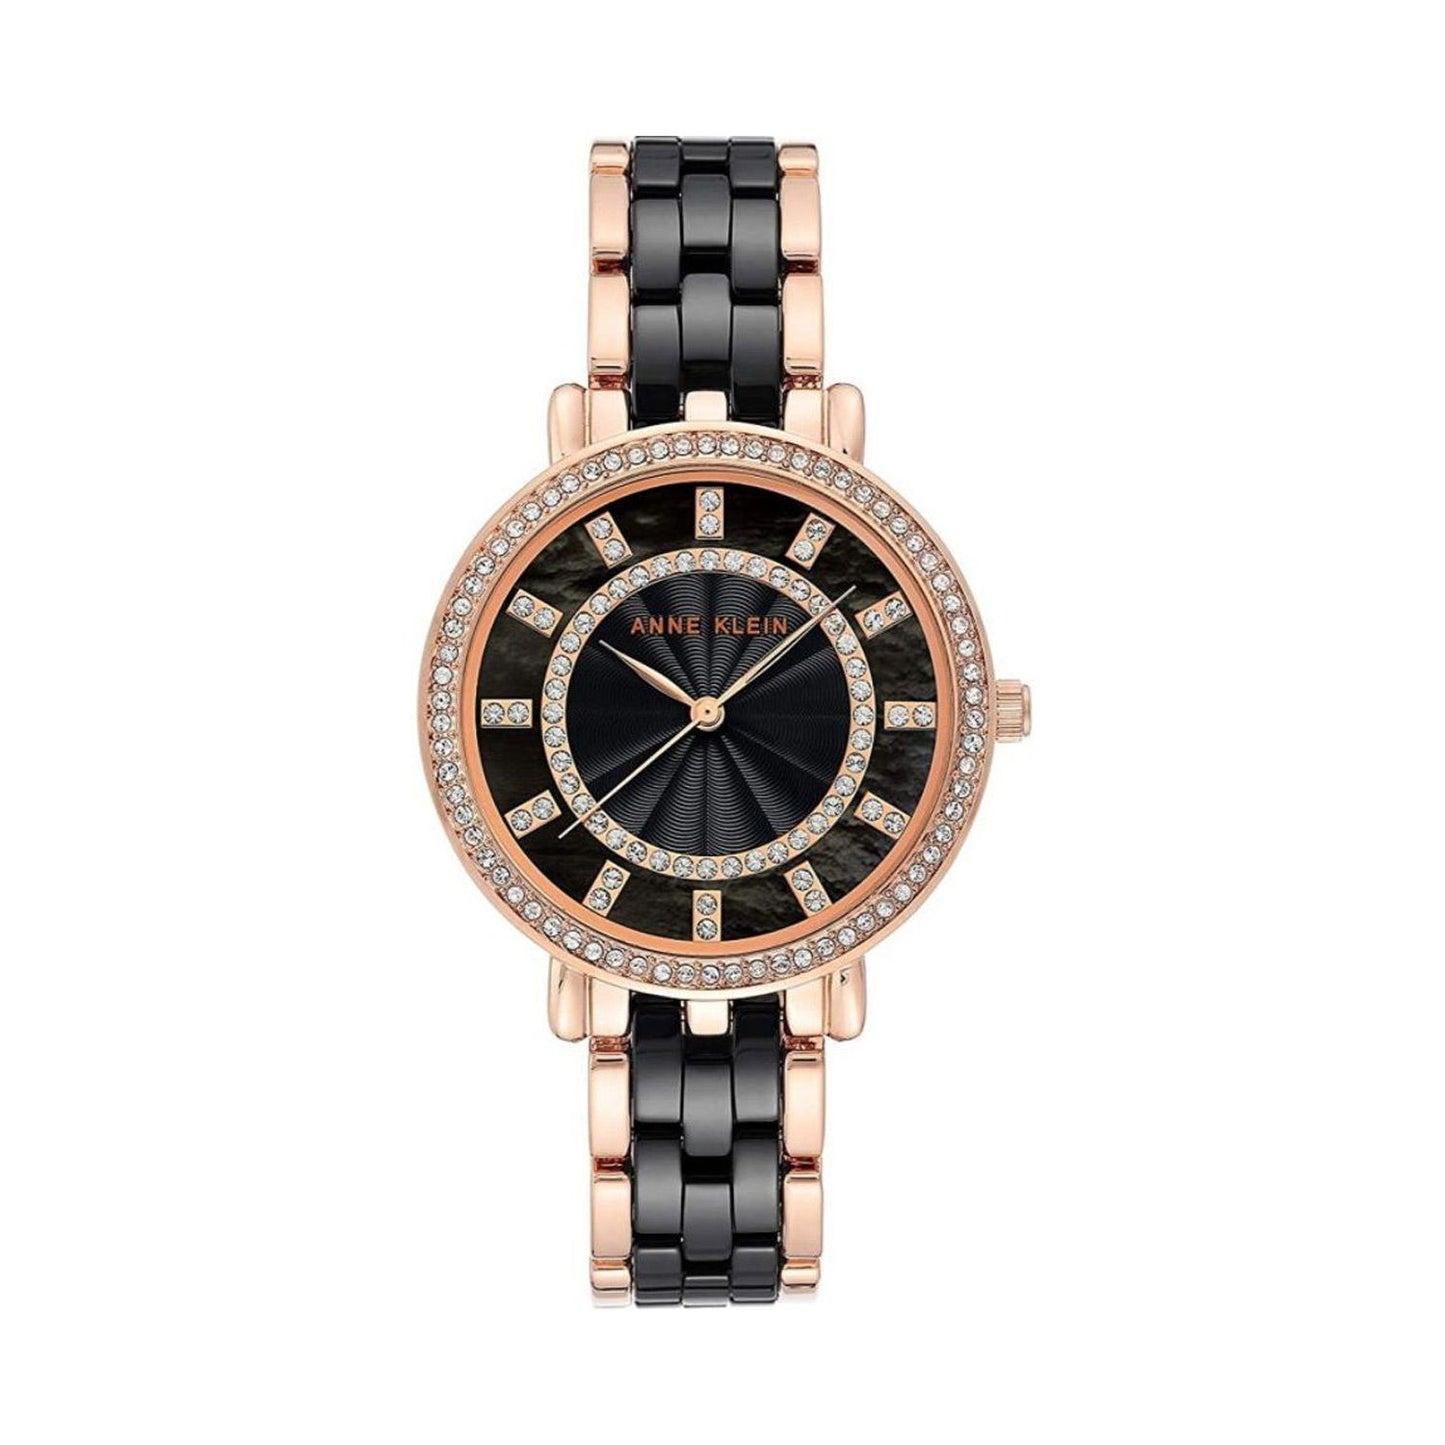 Anne Klein Women's Premium Crystal Accented Ceramic Bracelet Watch W12621